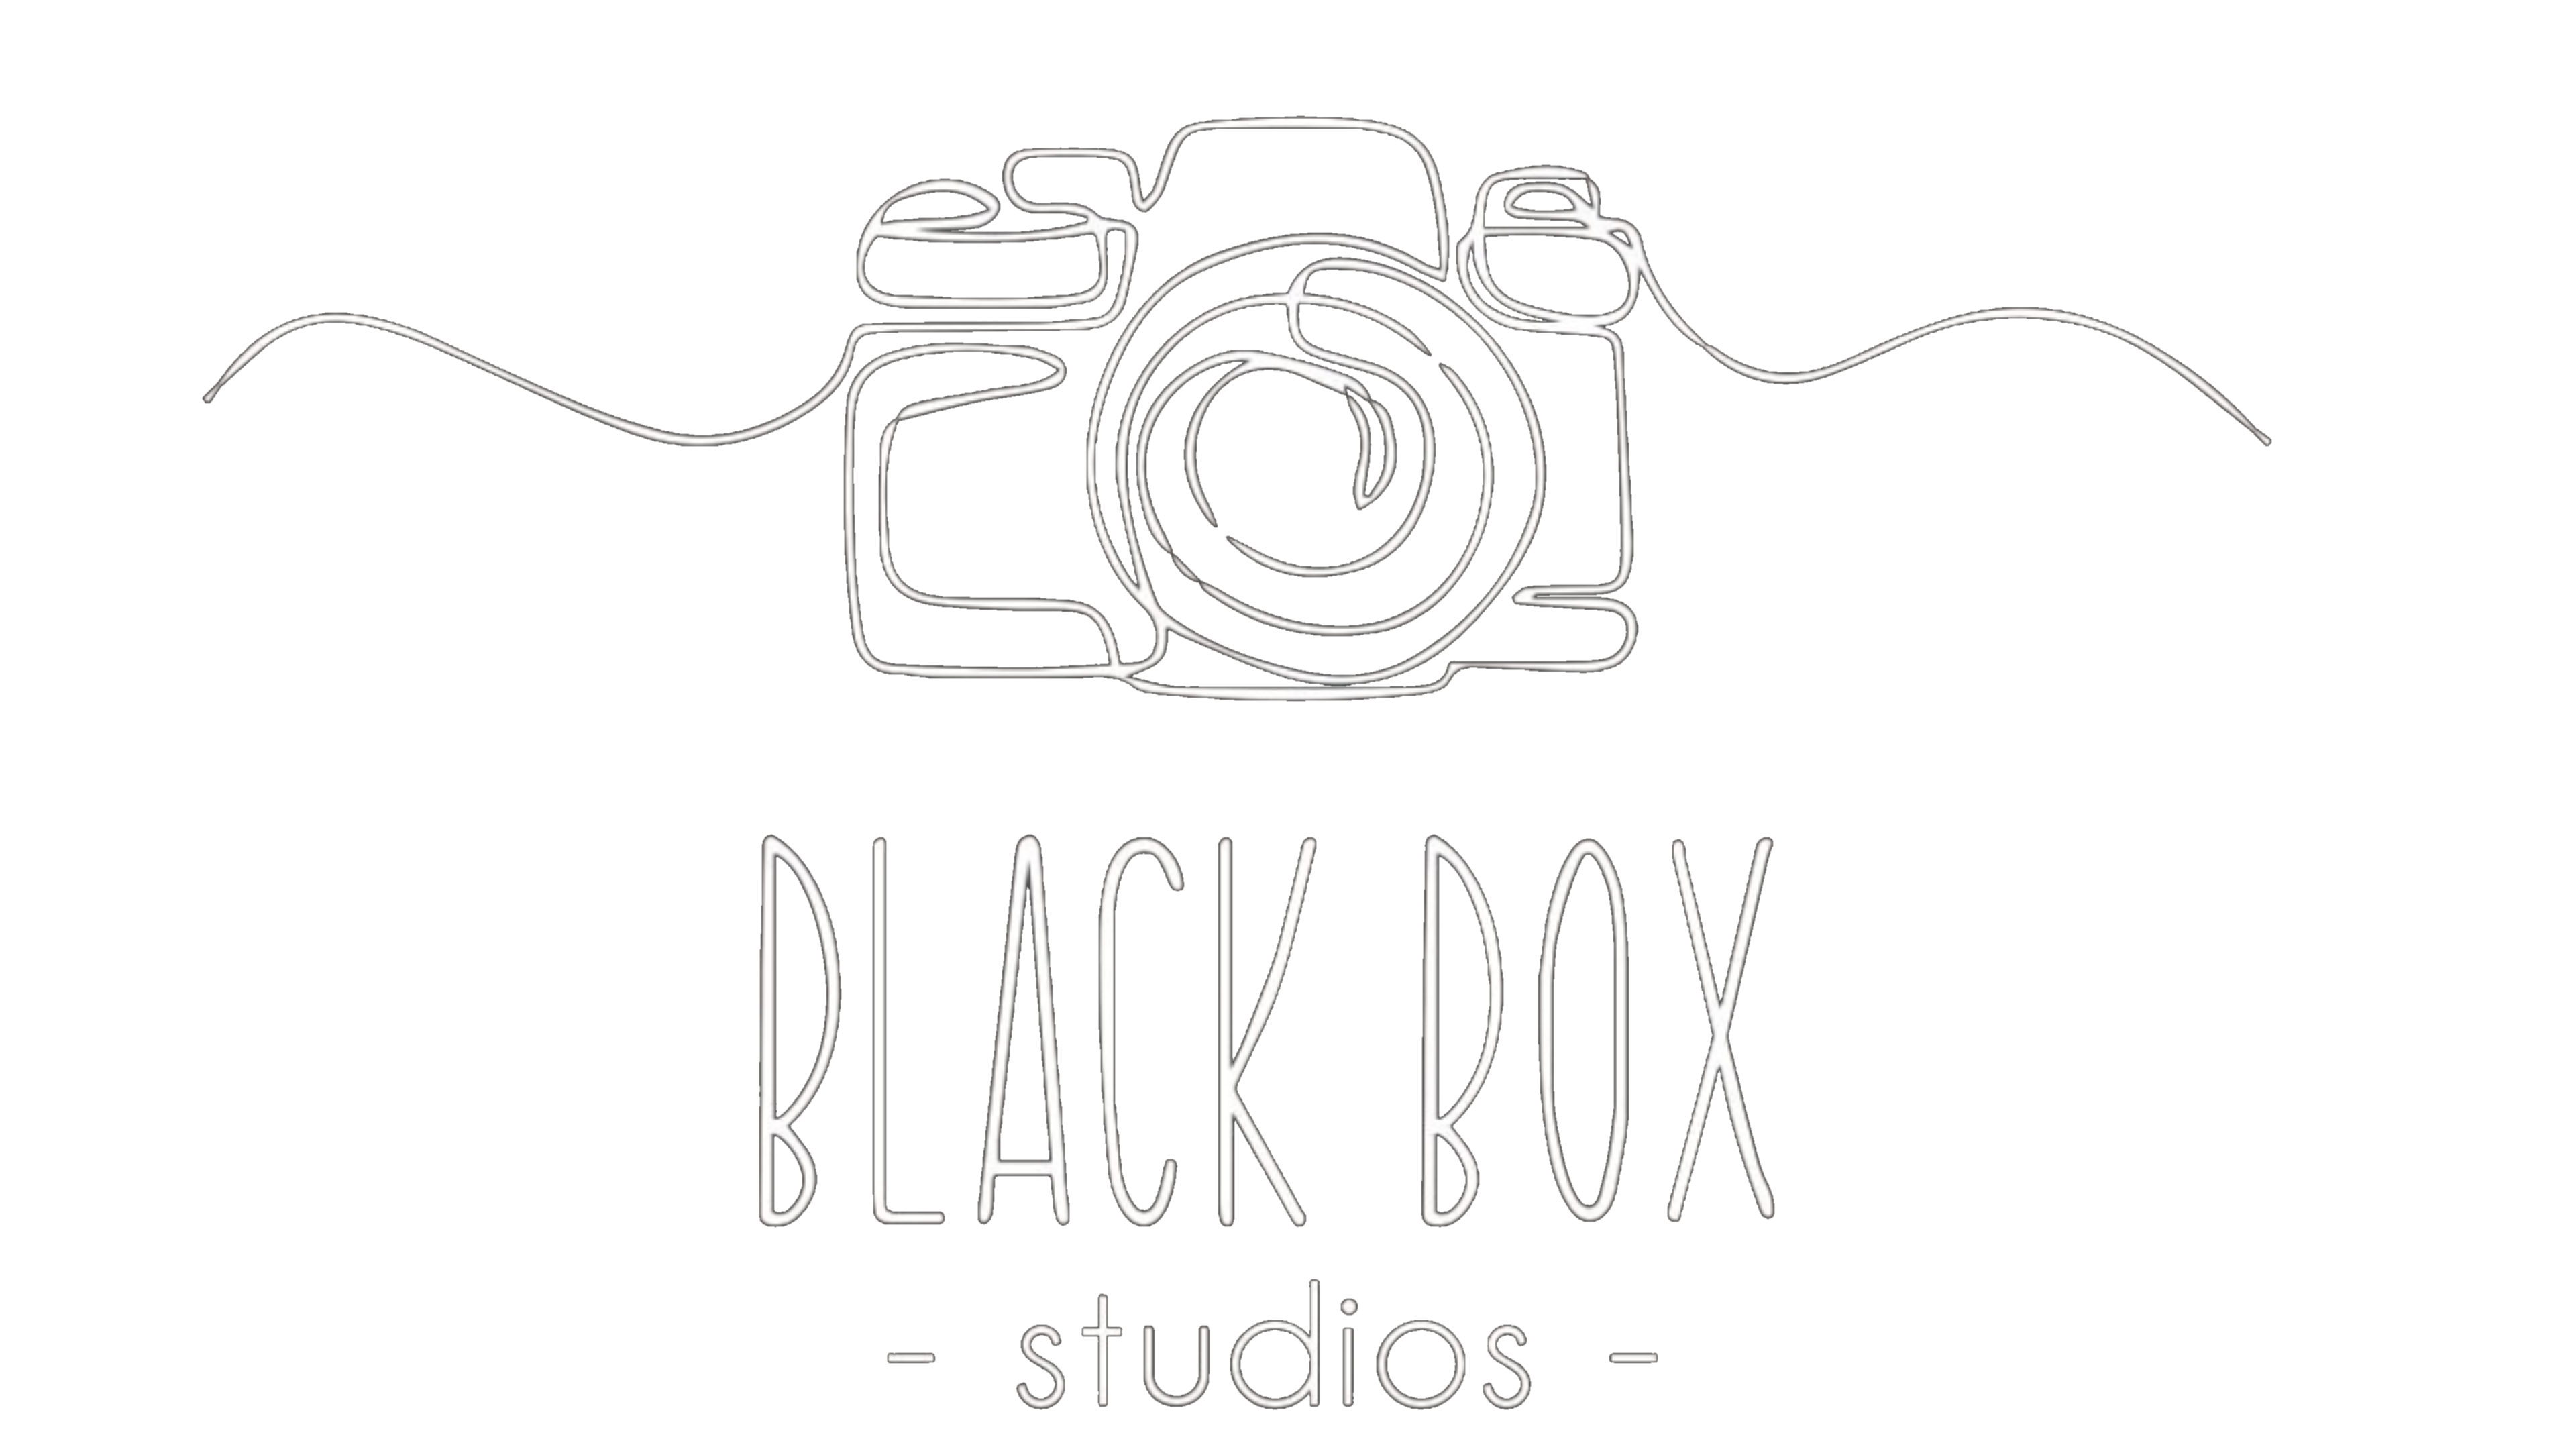 Blackbox Studi0s